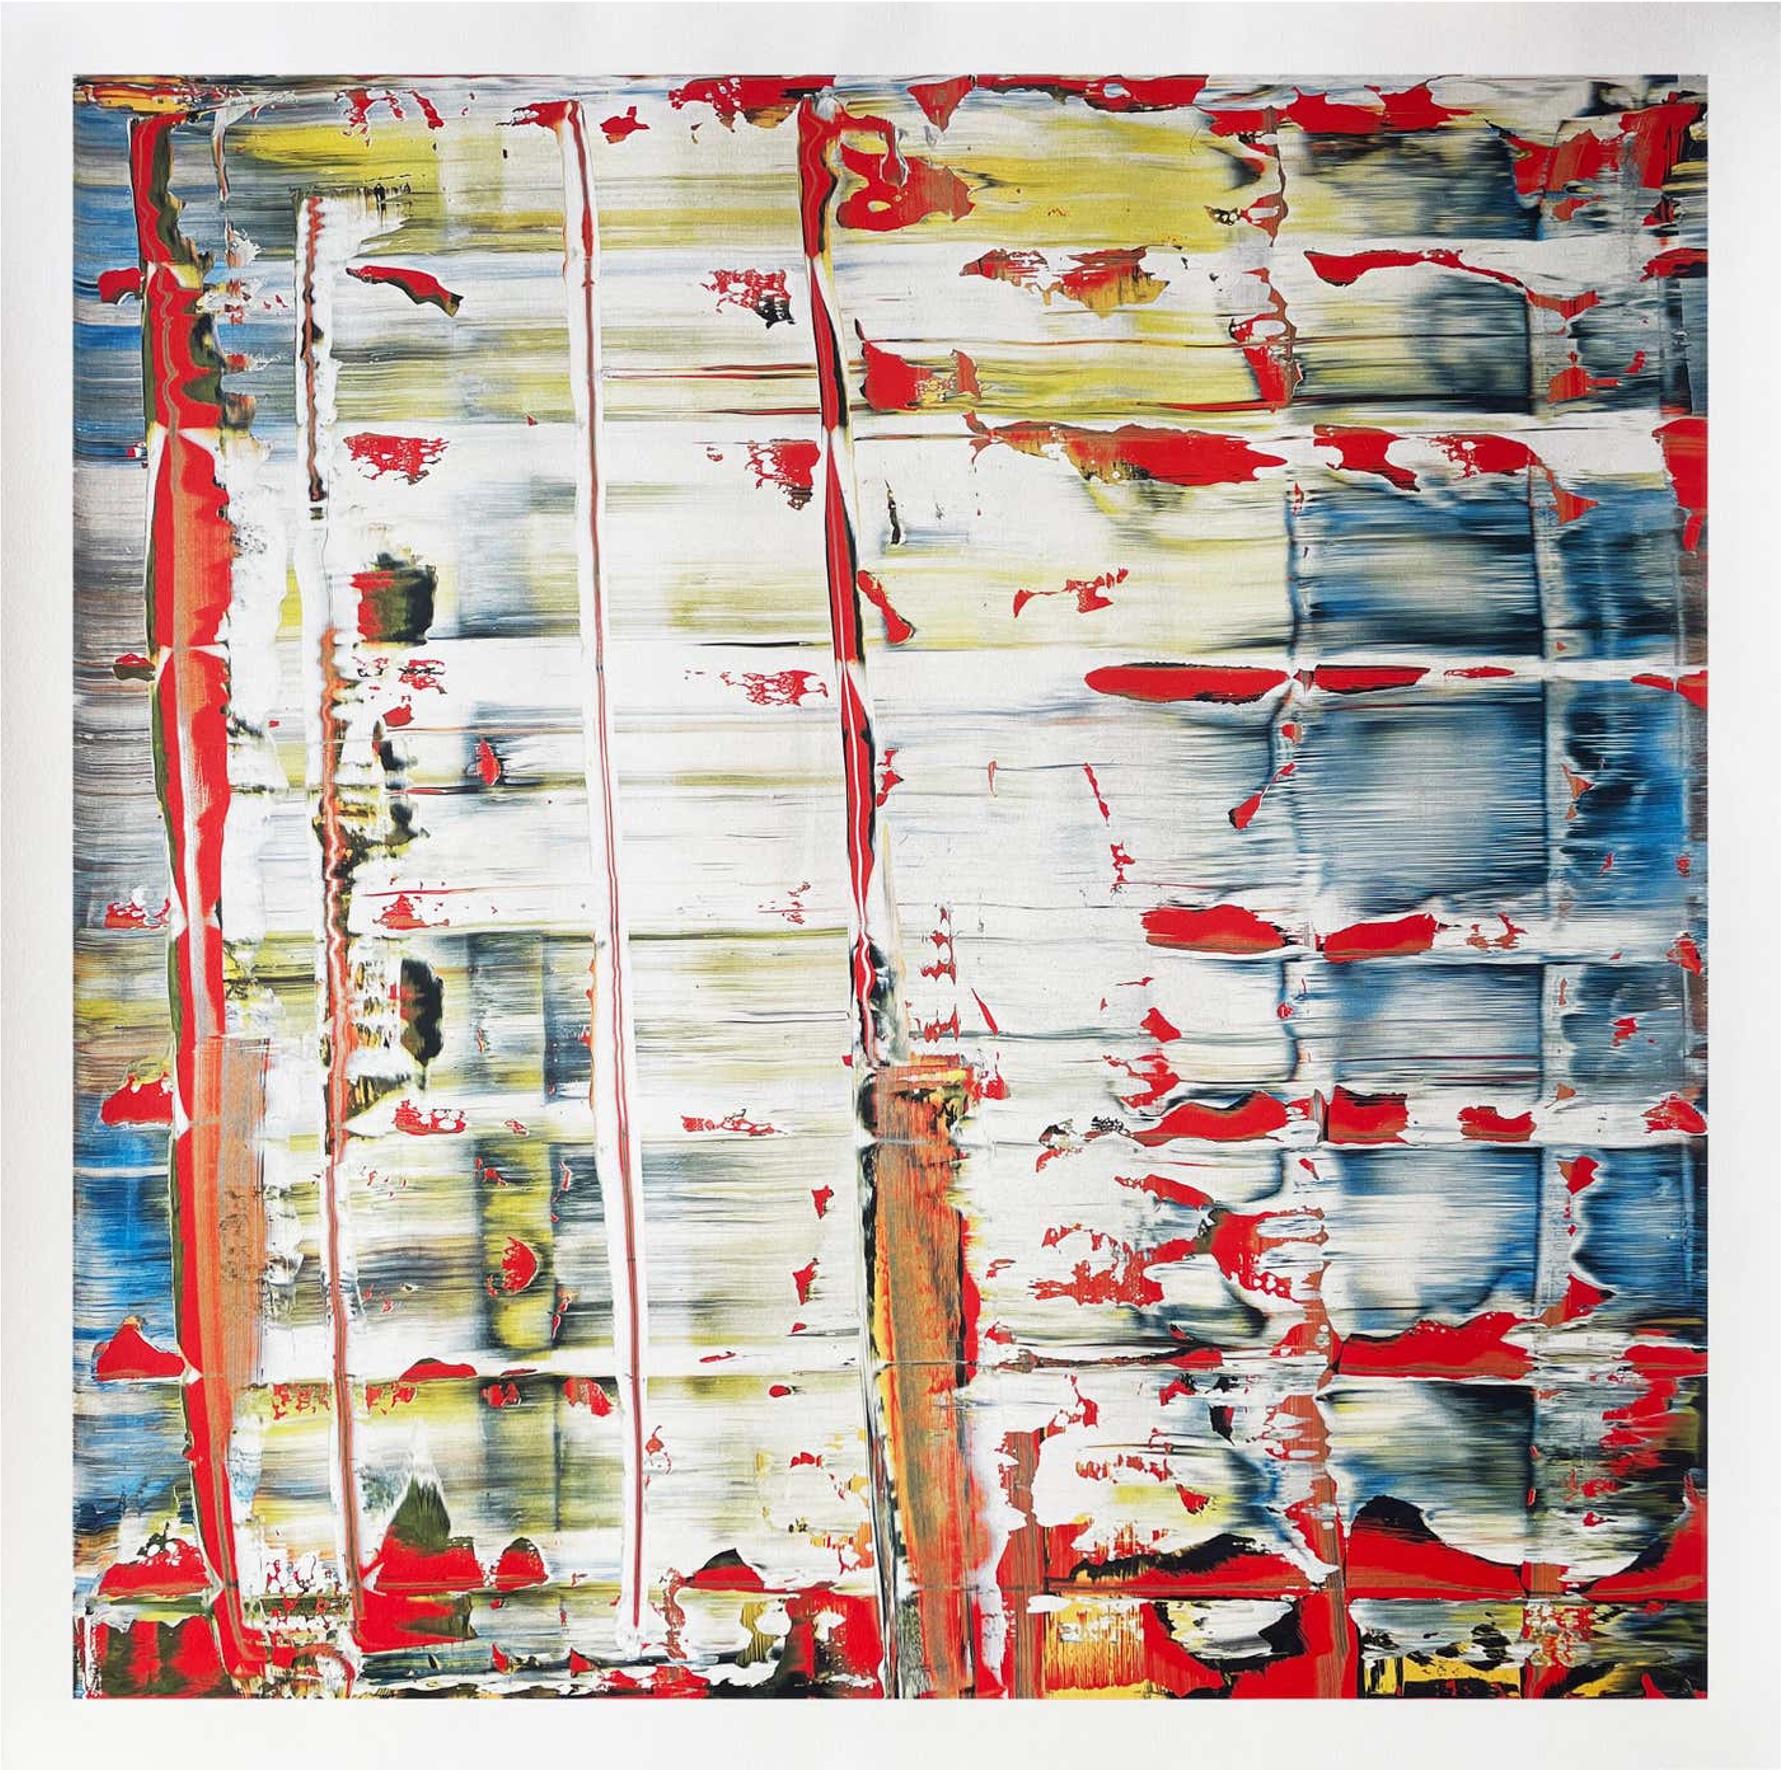 Gerhard Richter
Bild Abstraktes, 2023
Impression hybride 6 couleurs sur papier artisanal Rives 260g
27 3/5 × 27 3/5 in  70 × 70 cm
Edition de 500 exemplaires